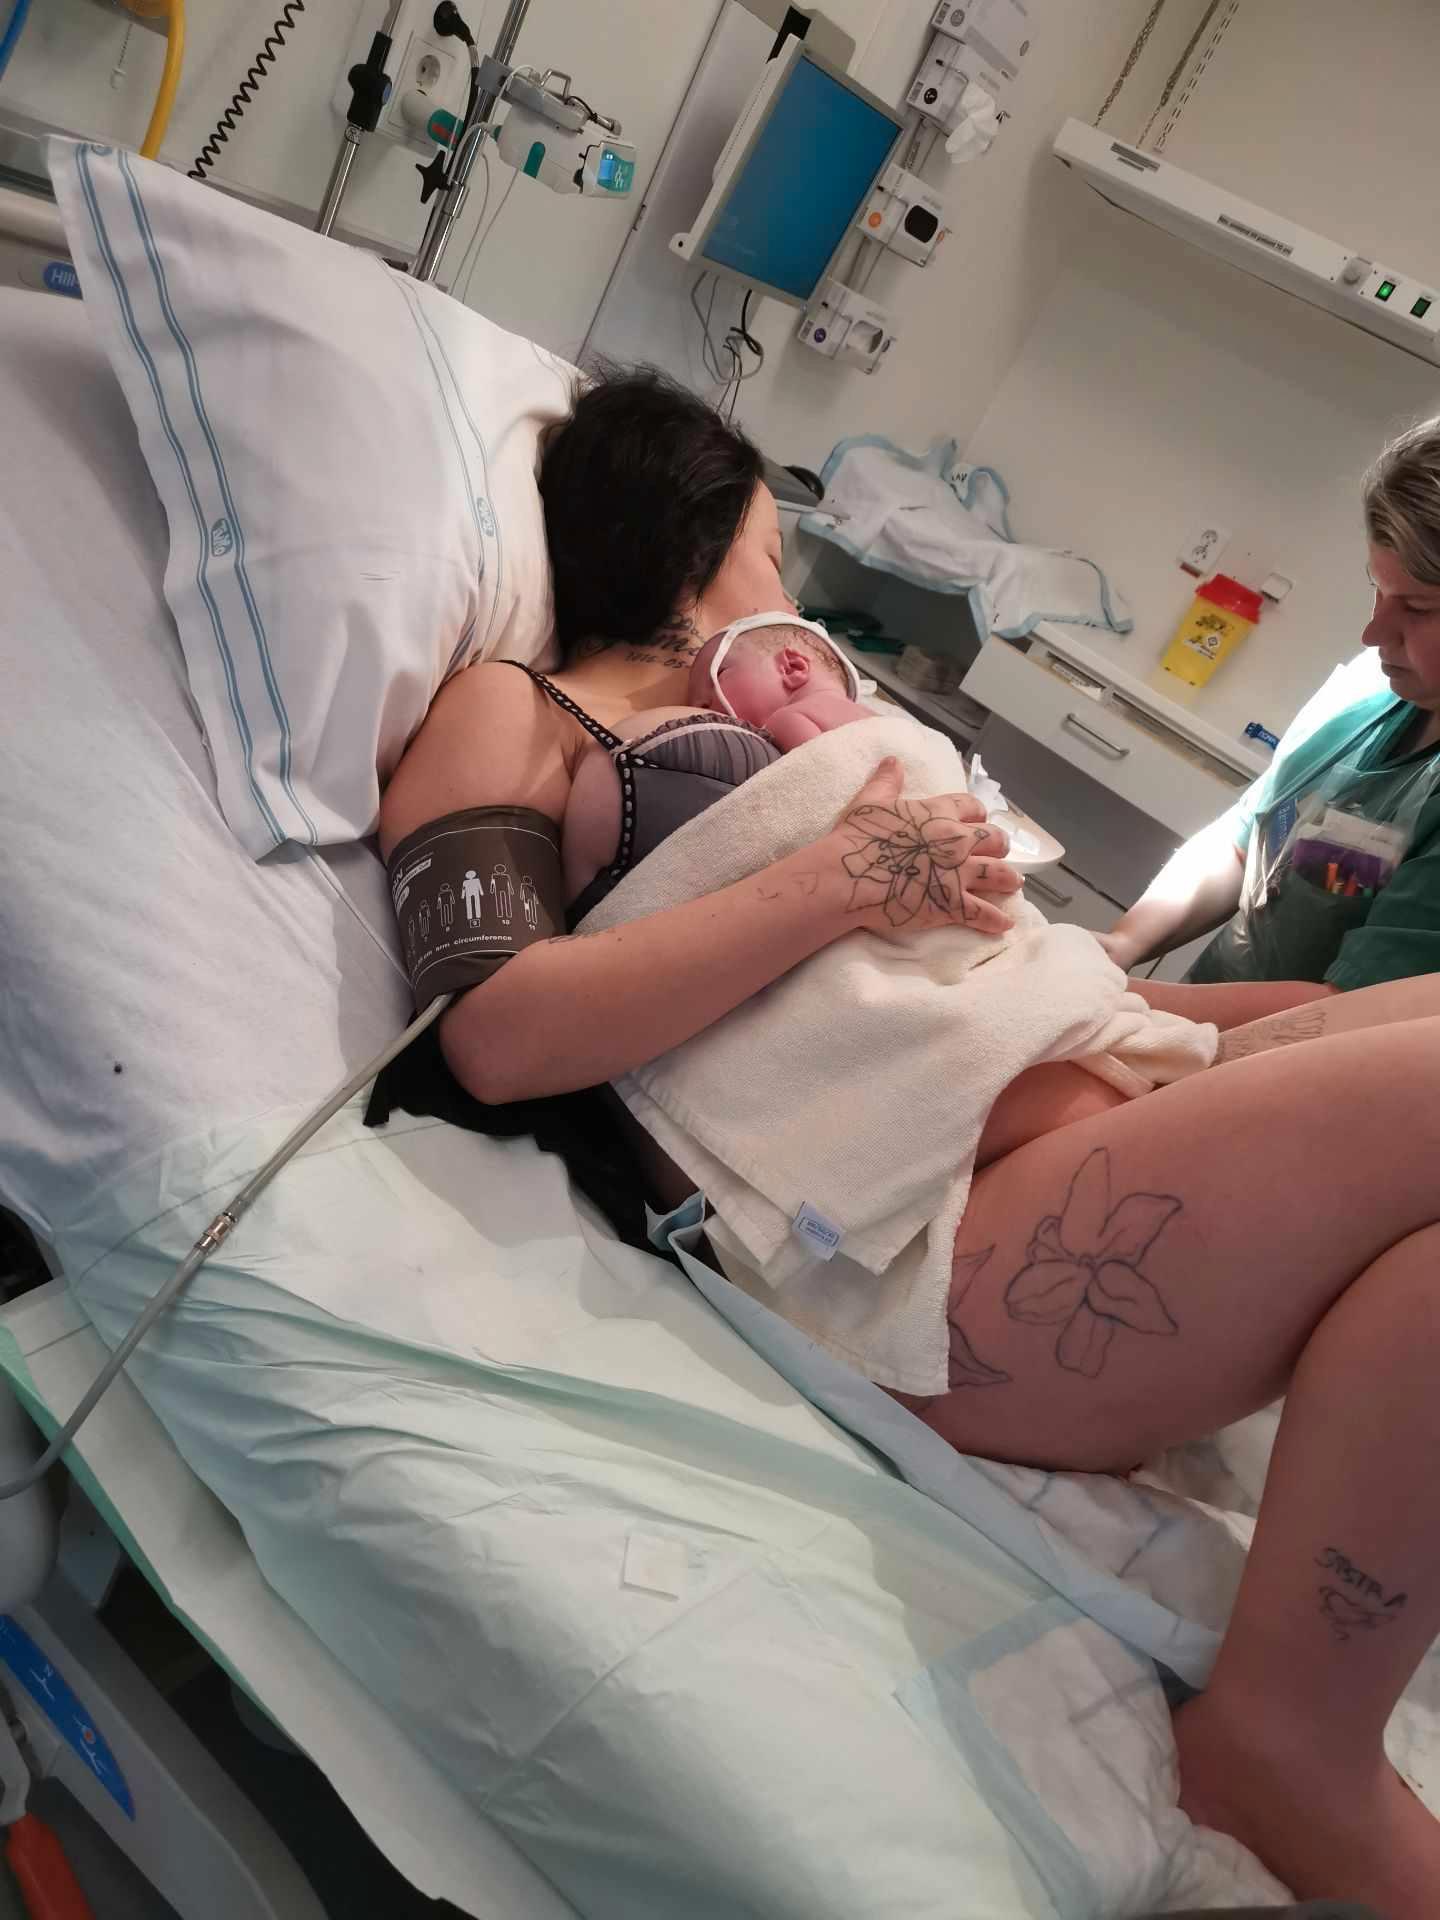 Michelle och Alex fördes till sjukhuset, och allt visade sig vara bra med dem: ”De var förvånade på förlossningen att att det inte var värre”.